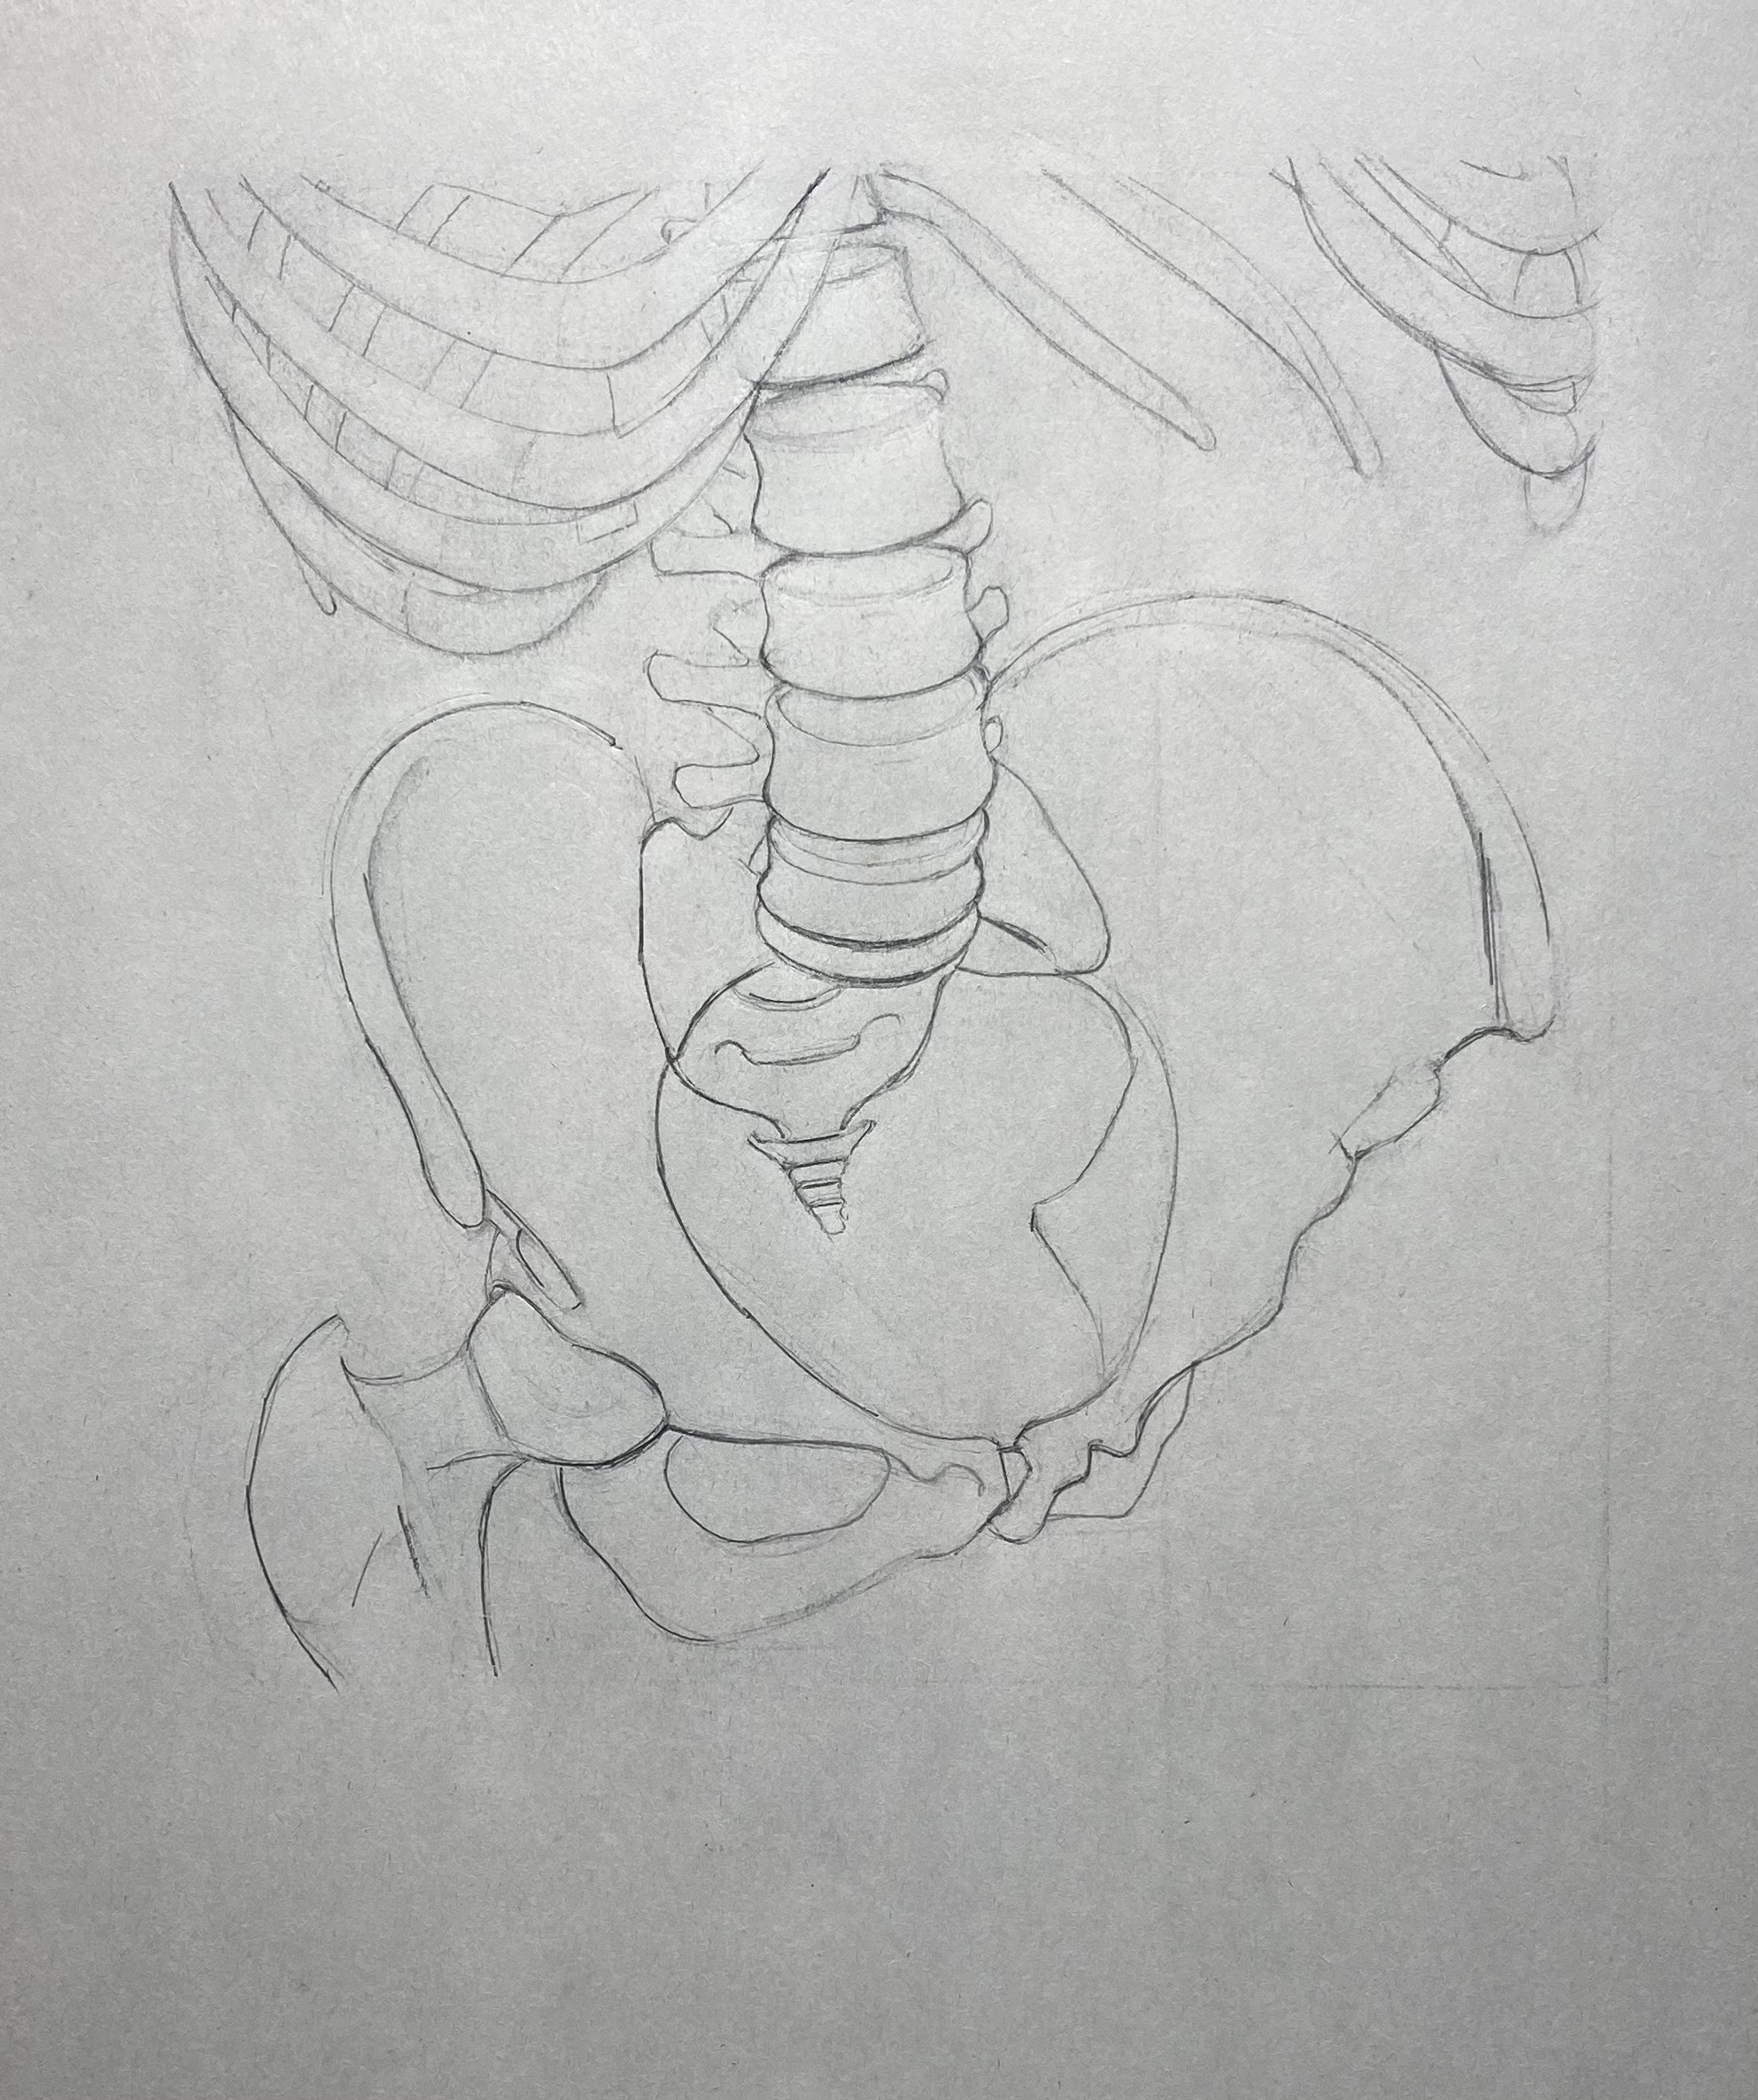 Skeleton drawing by Steve Bradbury